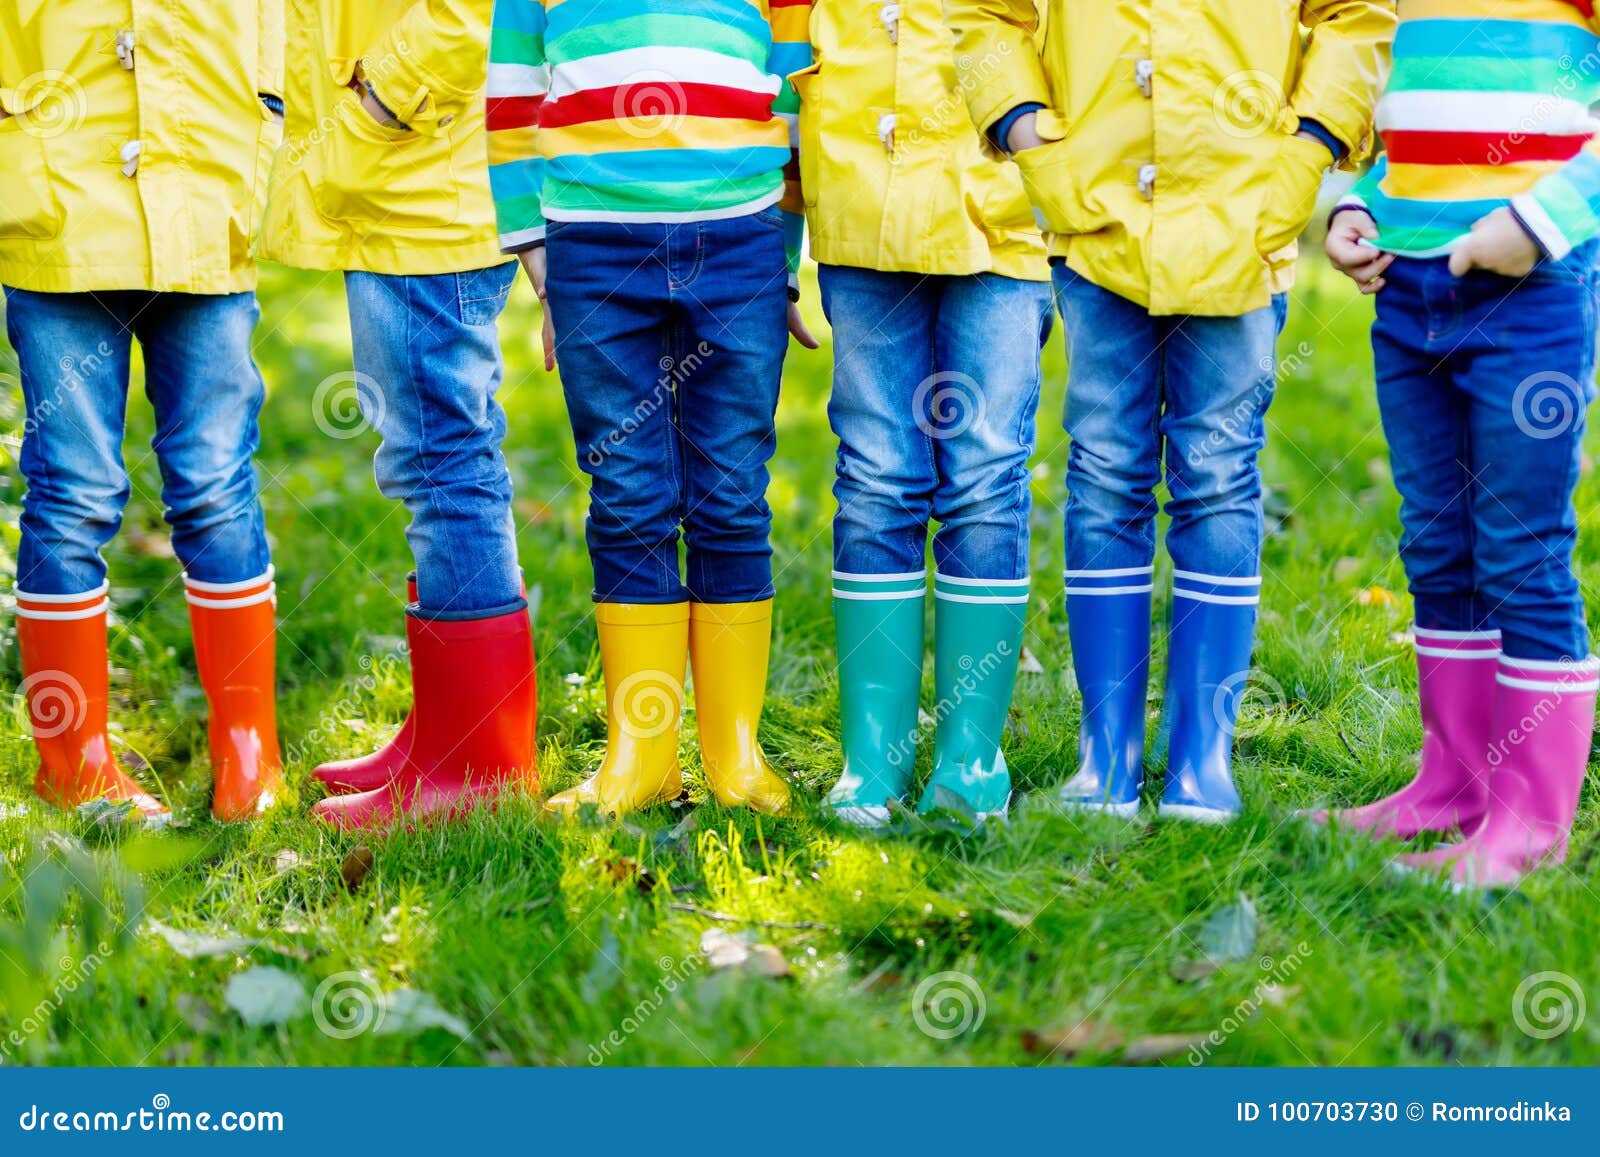 Маленькие ребеята, мальчики или девушки в джинсах и желтой куртке в красочных ботинках дождя Конец-вверх детей с различными резиновыми ботинками Обувь на ненастное падение Концепция яркой осени